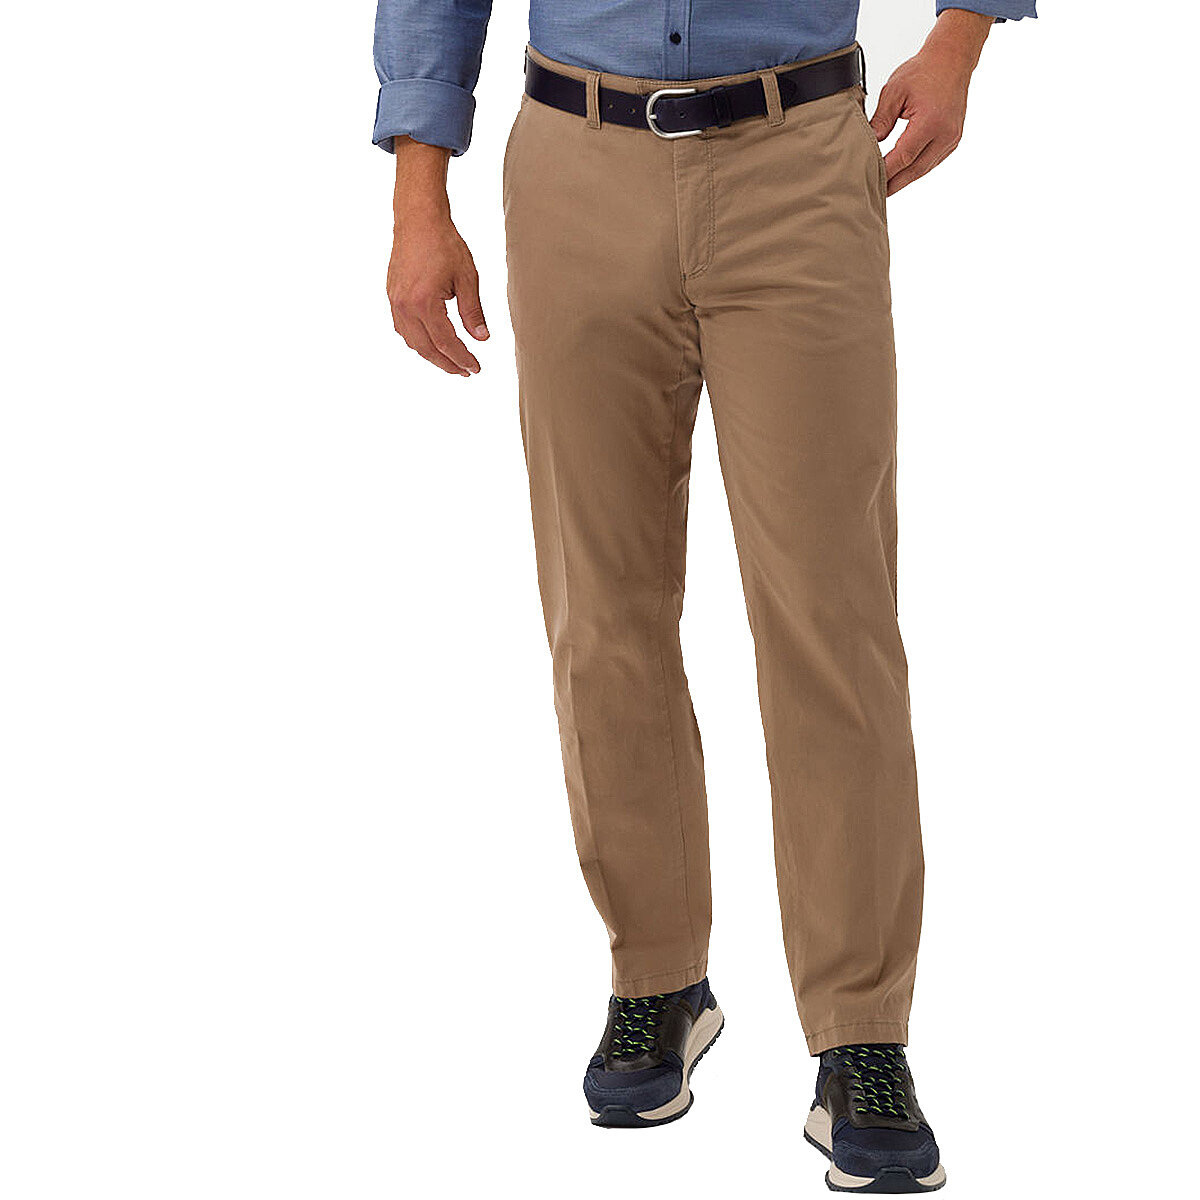 Eurex bei Brax Pima | Modell Männermode (Hose | Flat-Front-Chino | ohne Kurzleib Beige Größenspezialist | Cotton | Bundfalten)